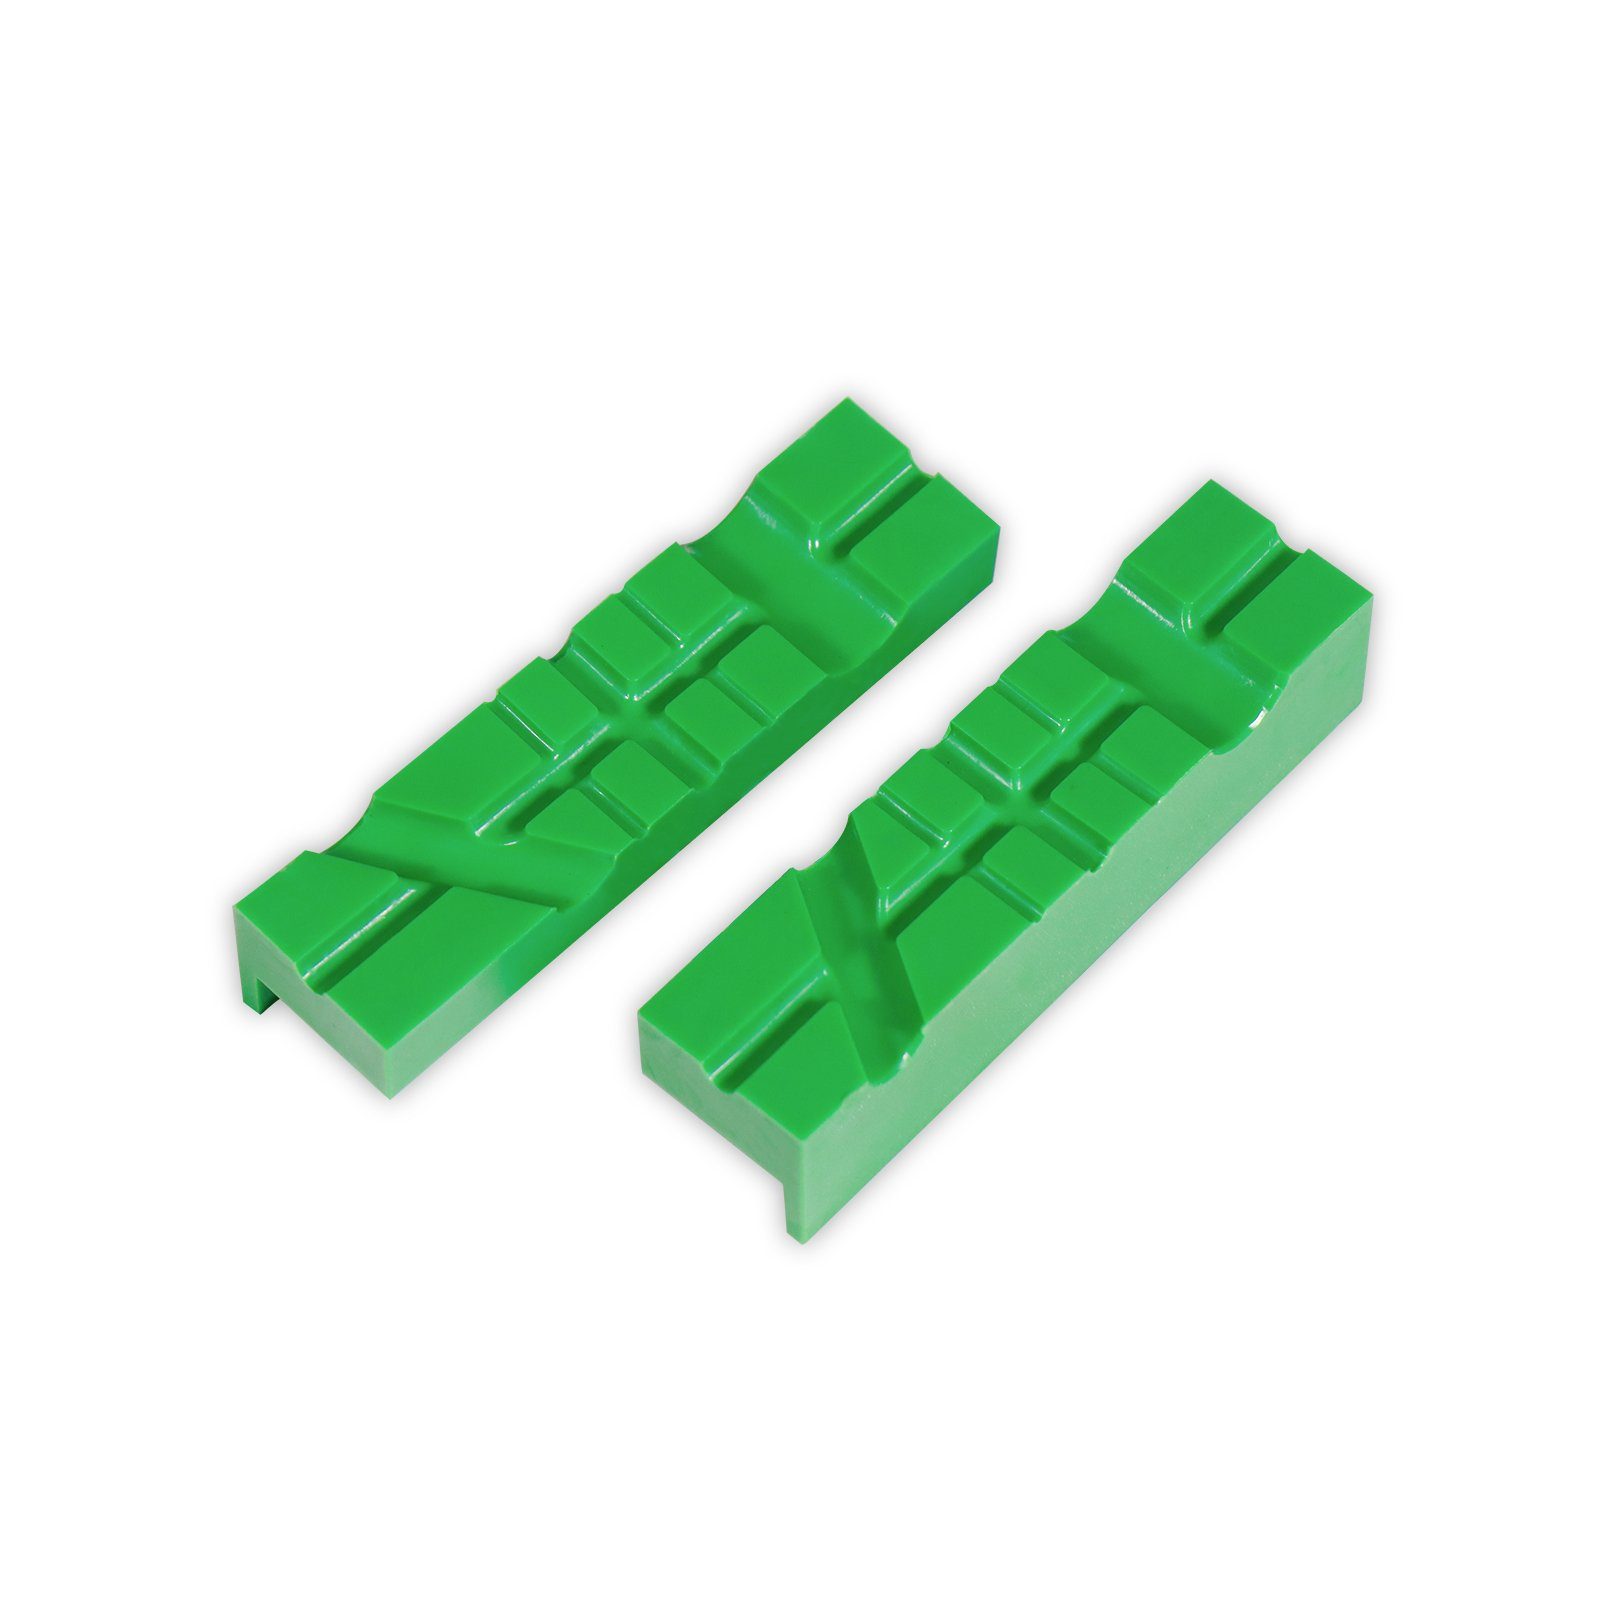 CCLIFE Schraubstock 2 tlg Schraubstock-Schutzbacken / Magnet mit 110mm grün 150mm Breite